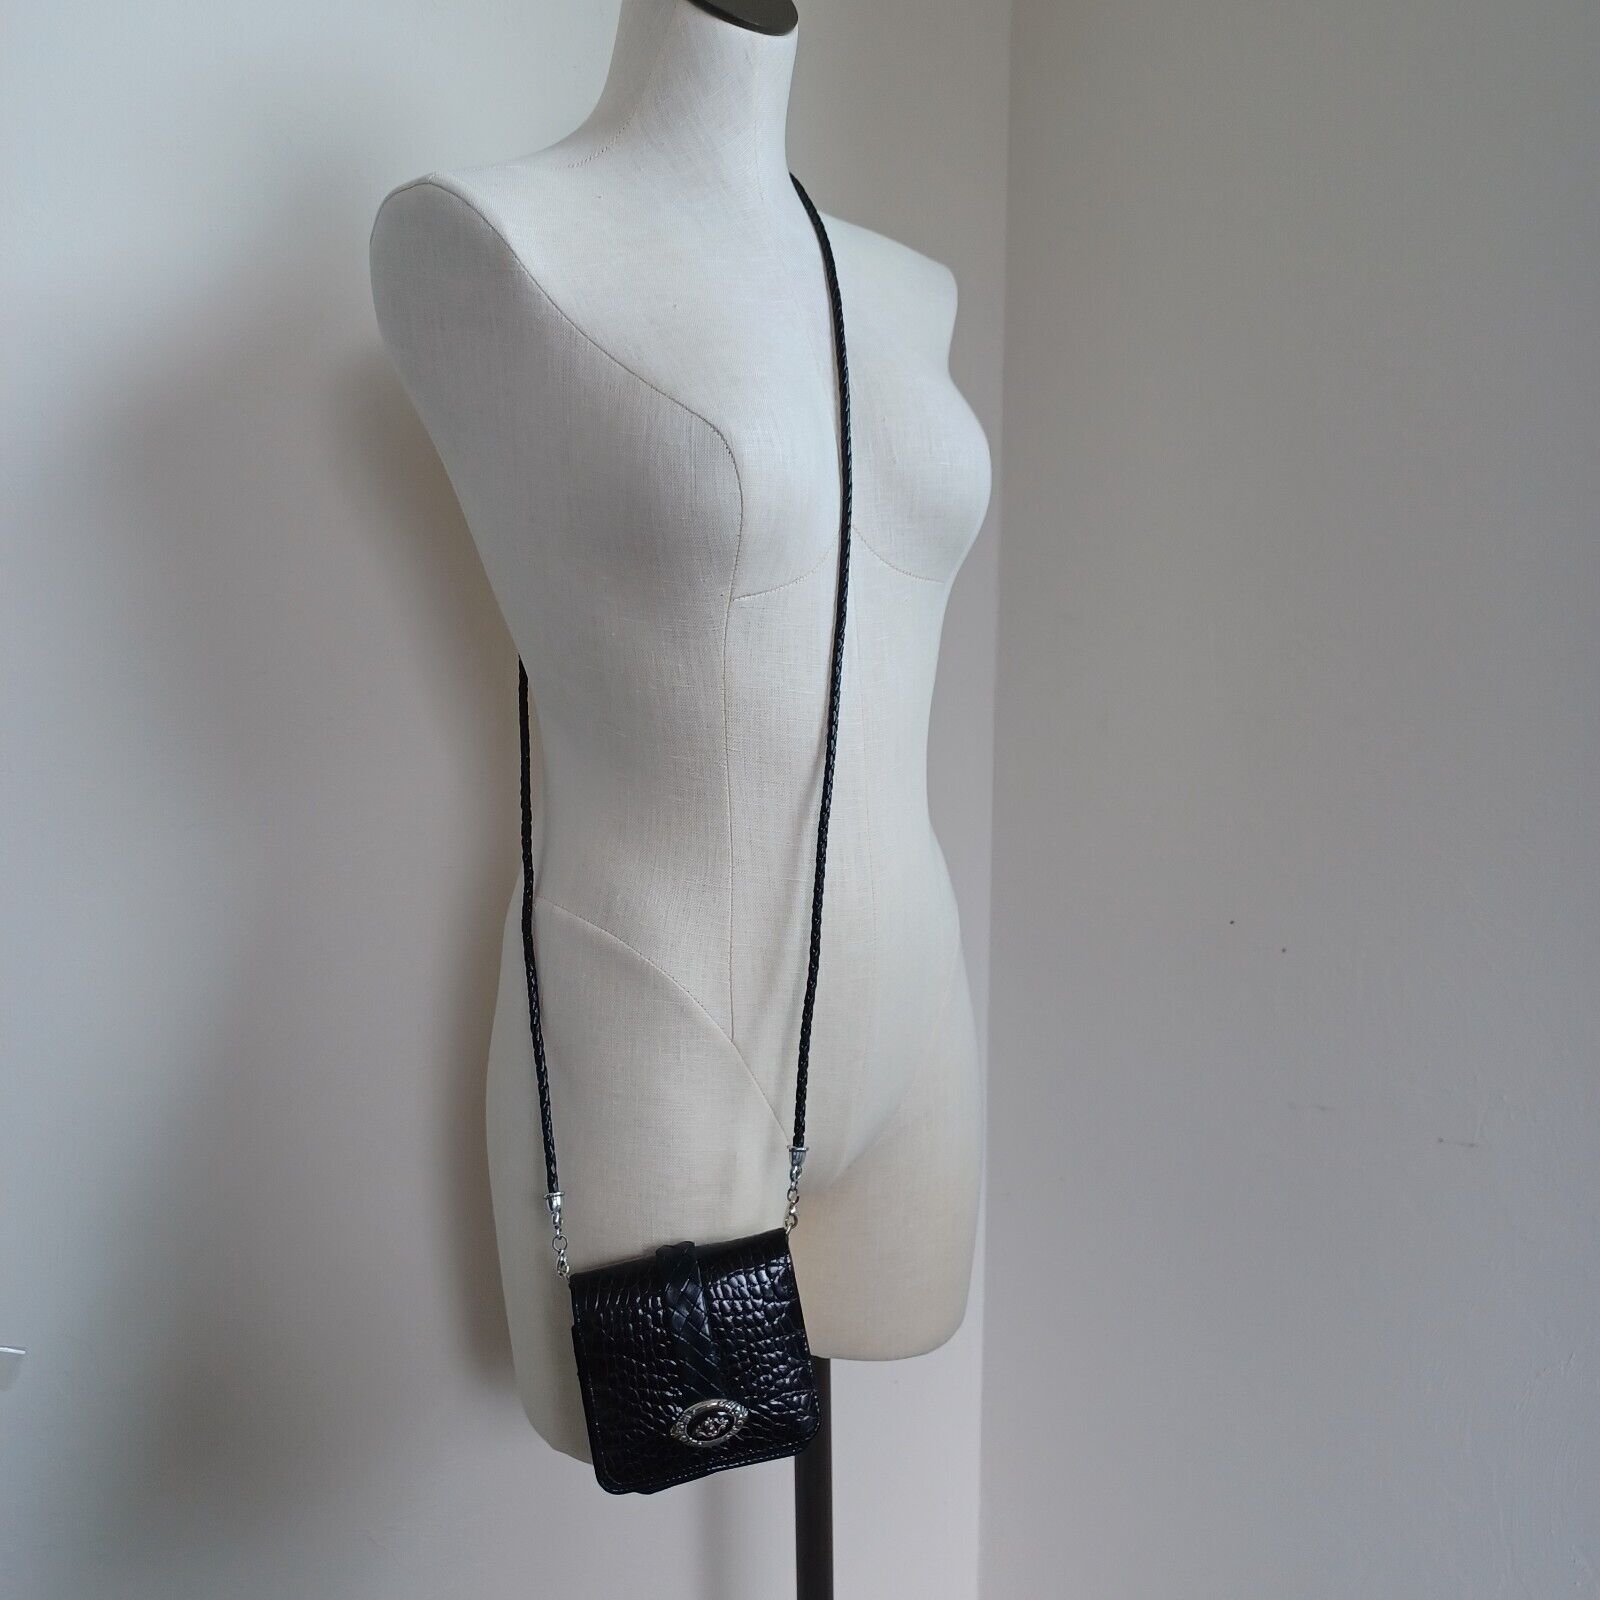 Brighton Crossbody Wallet Bag Black Leather Croco… - image 3